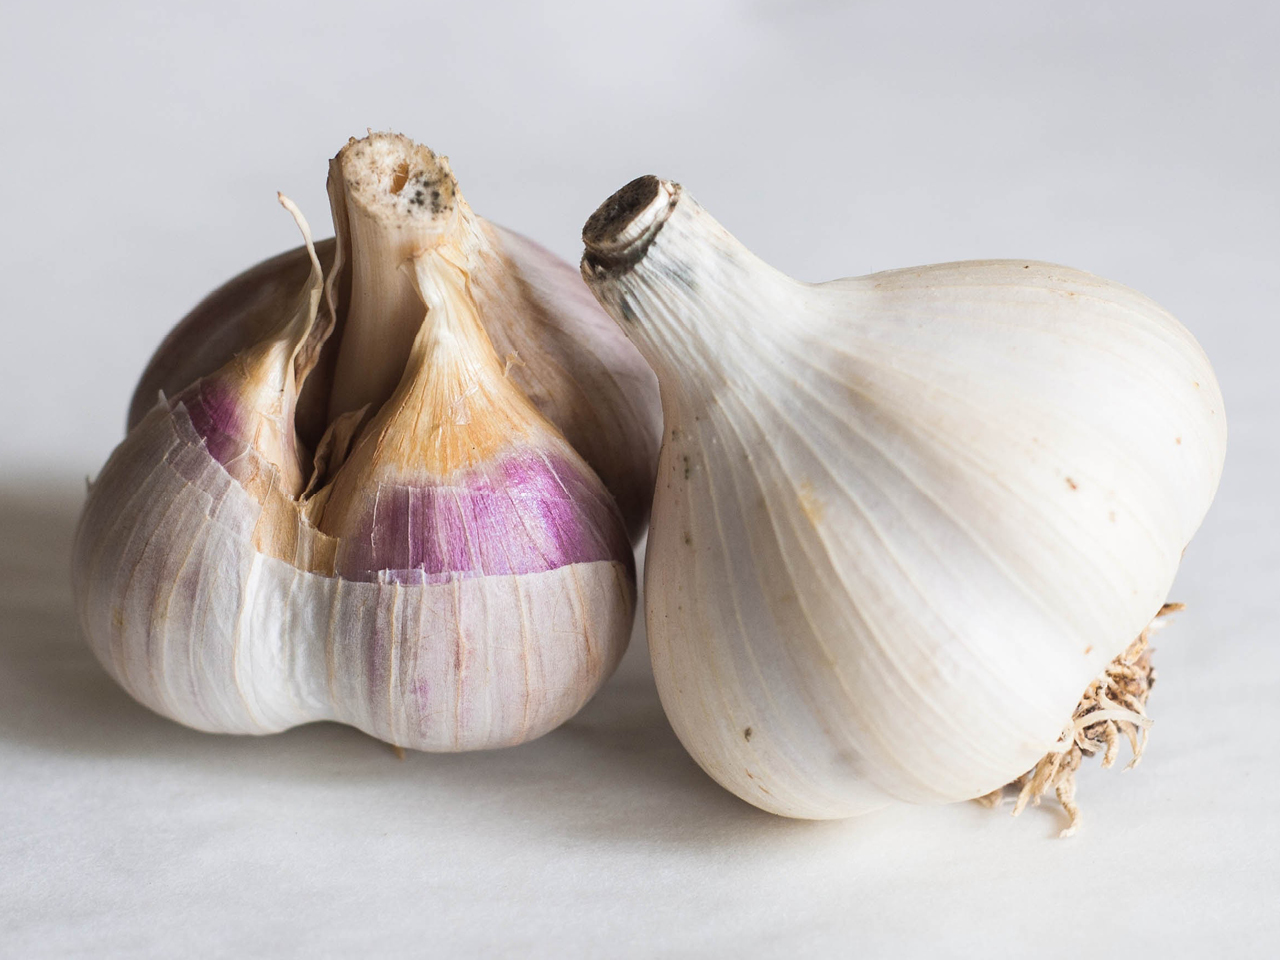 Two garlic bulbs